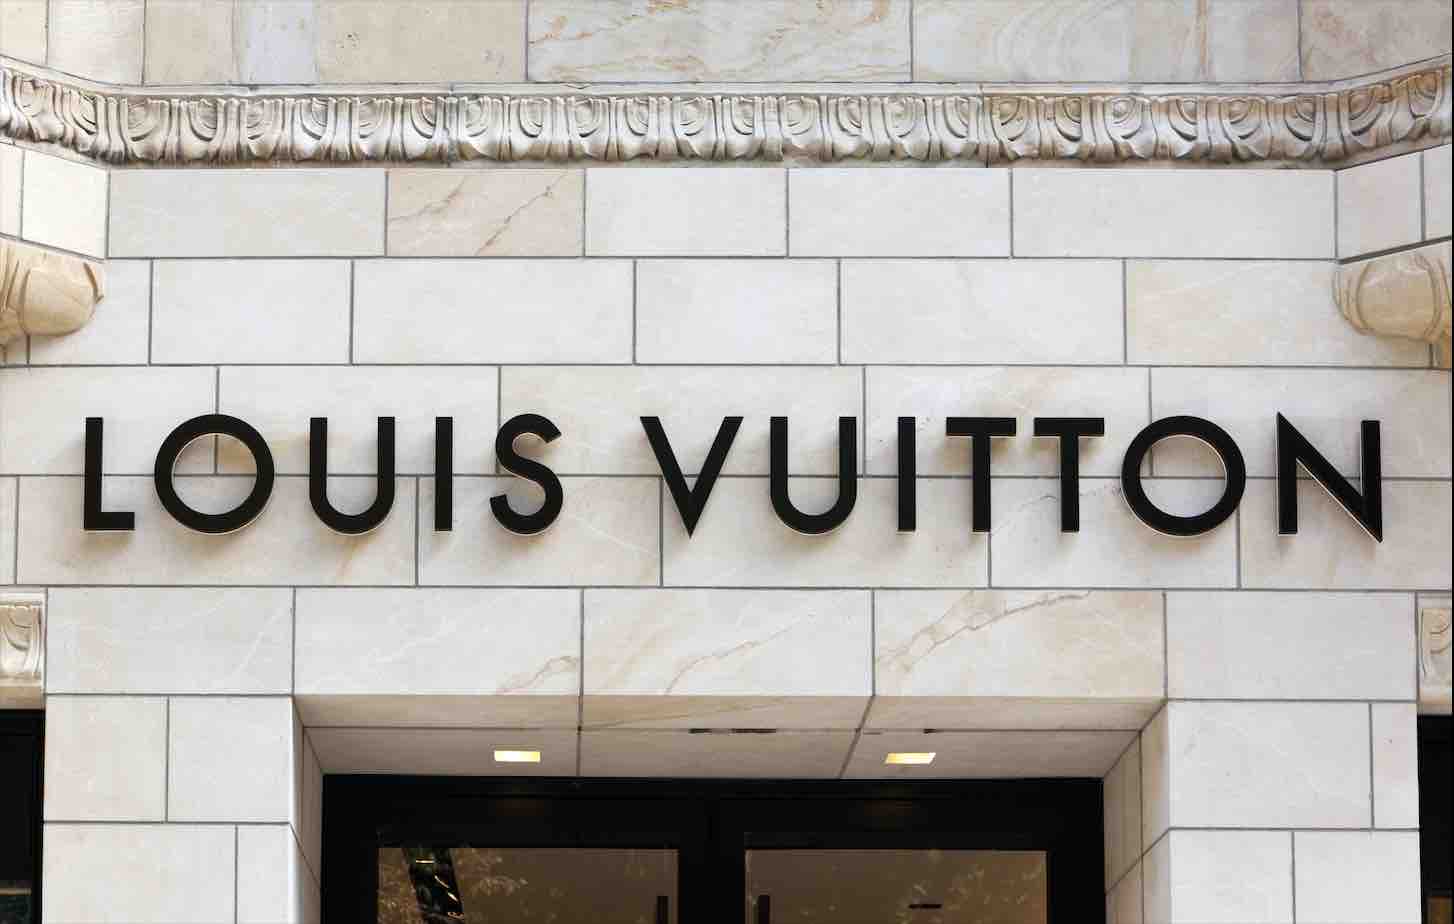 LOUIS VUITTON - Die Geschichte der Kult-Luxusmarke - www.semashow.com